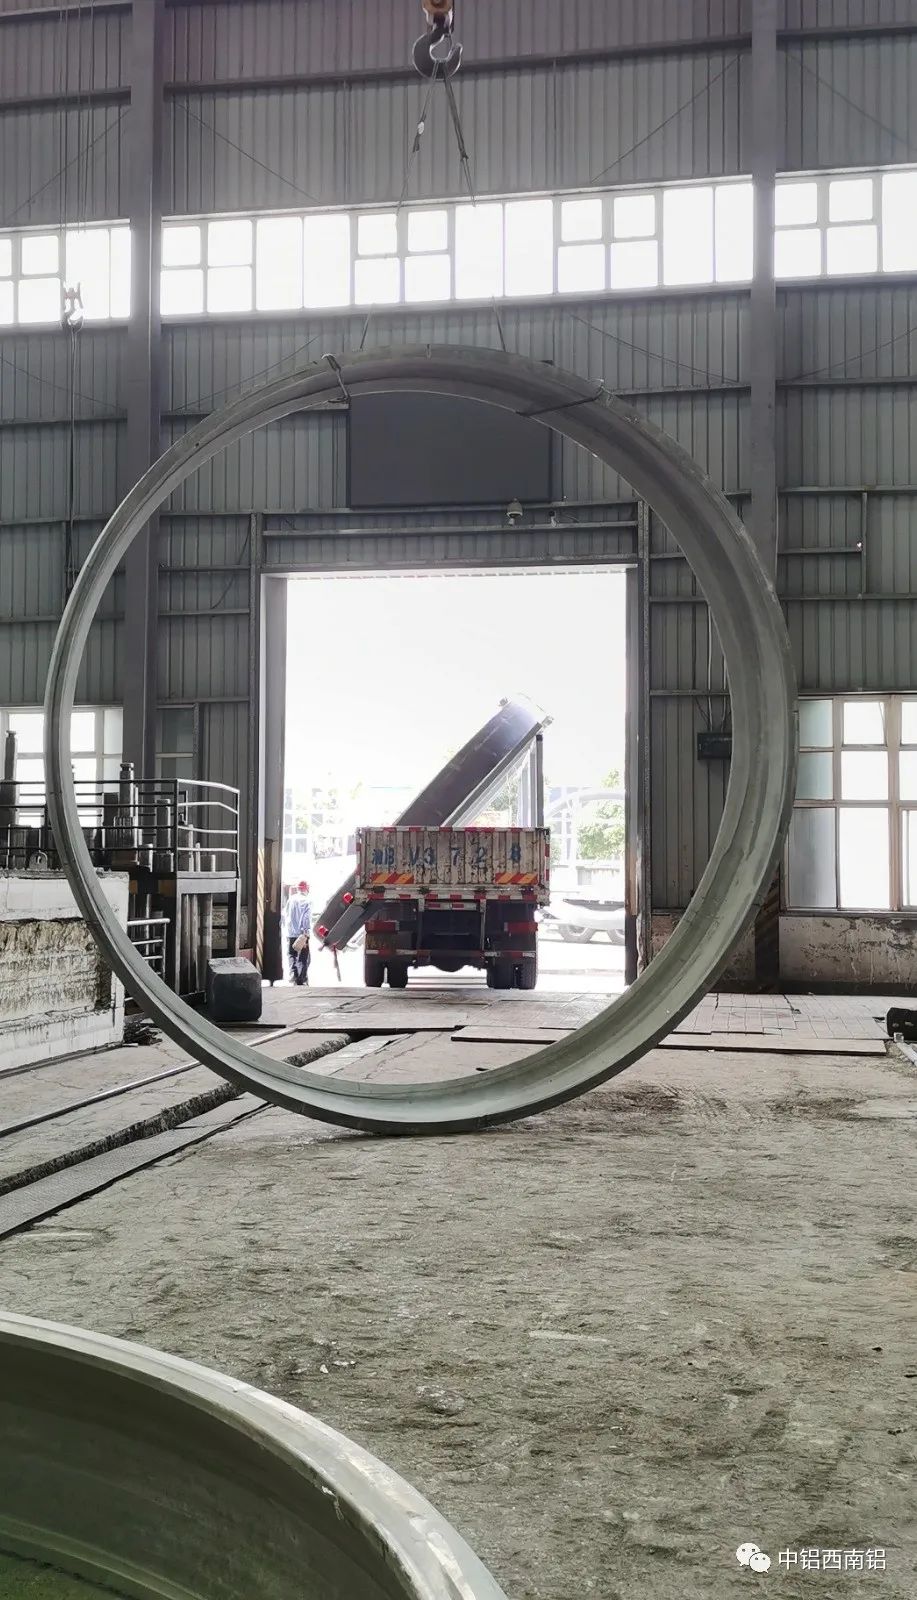 西南鋁大型鋁合金異形環件開發及產業化項目通過重慶市科技局驗收